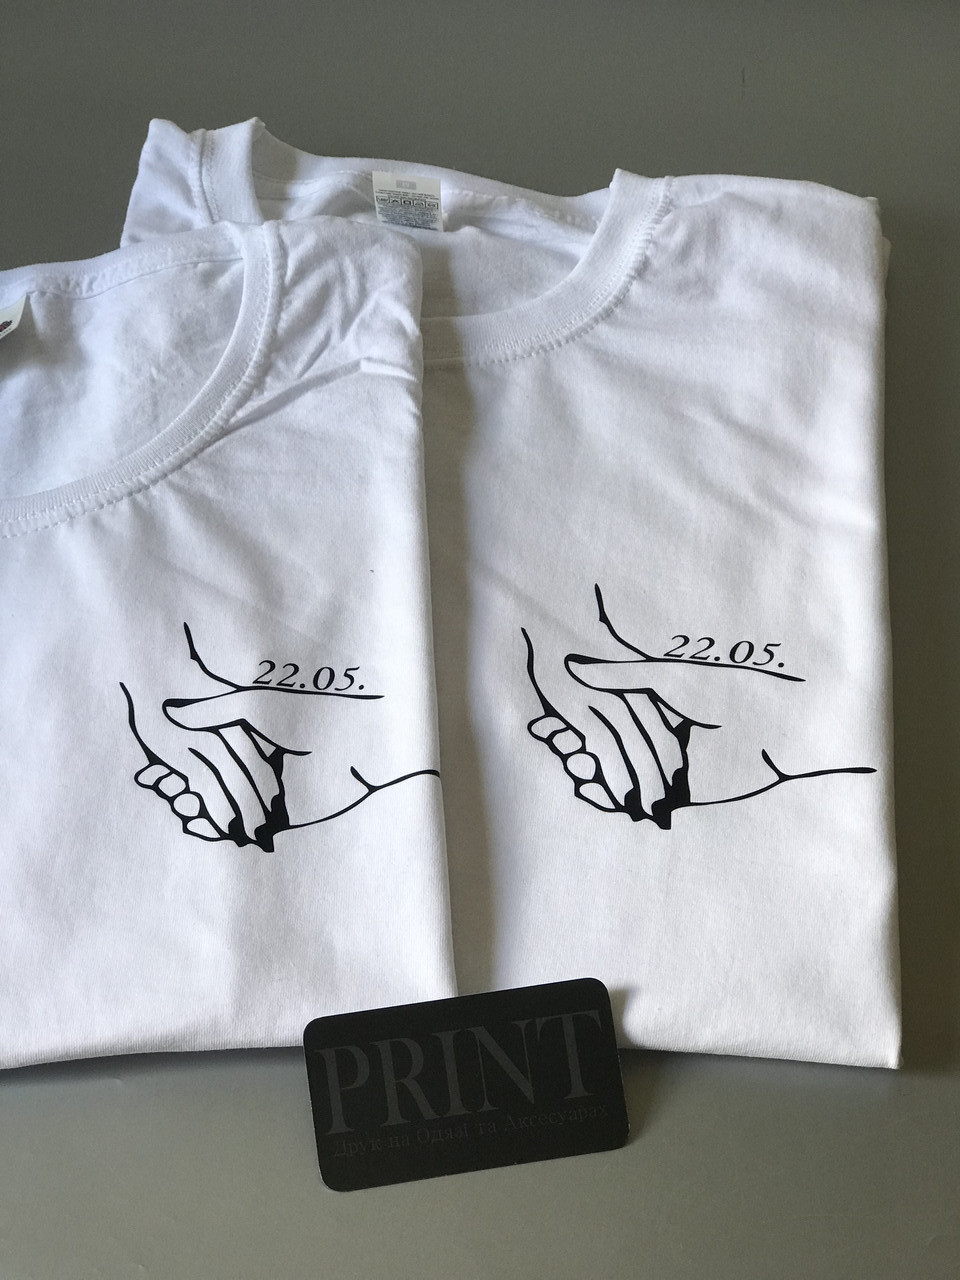 Парні футболки для закоханих хлопця і дівчини - Пропозиції руки та серця з датою річини